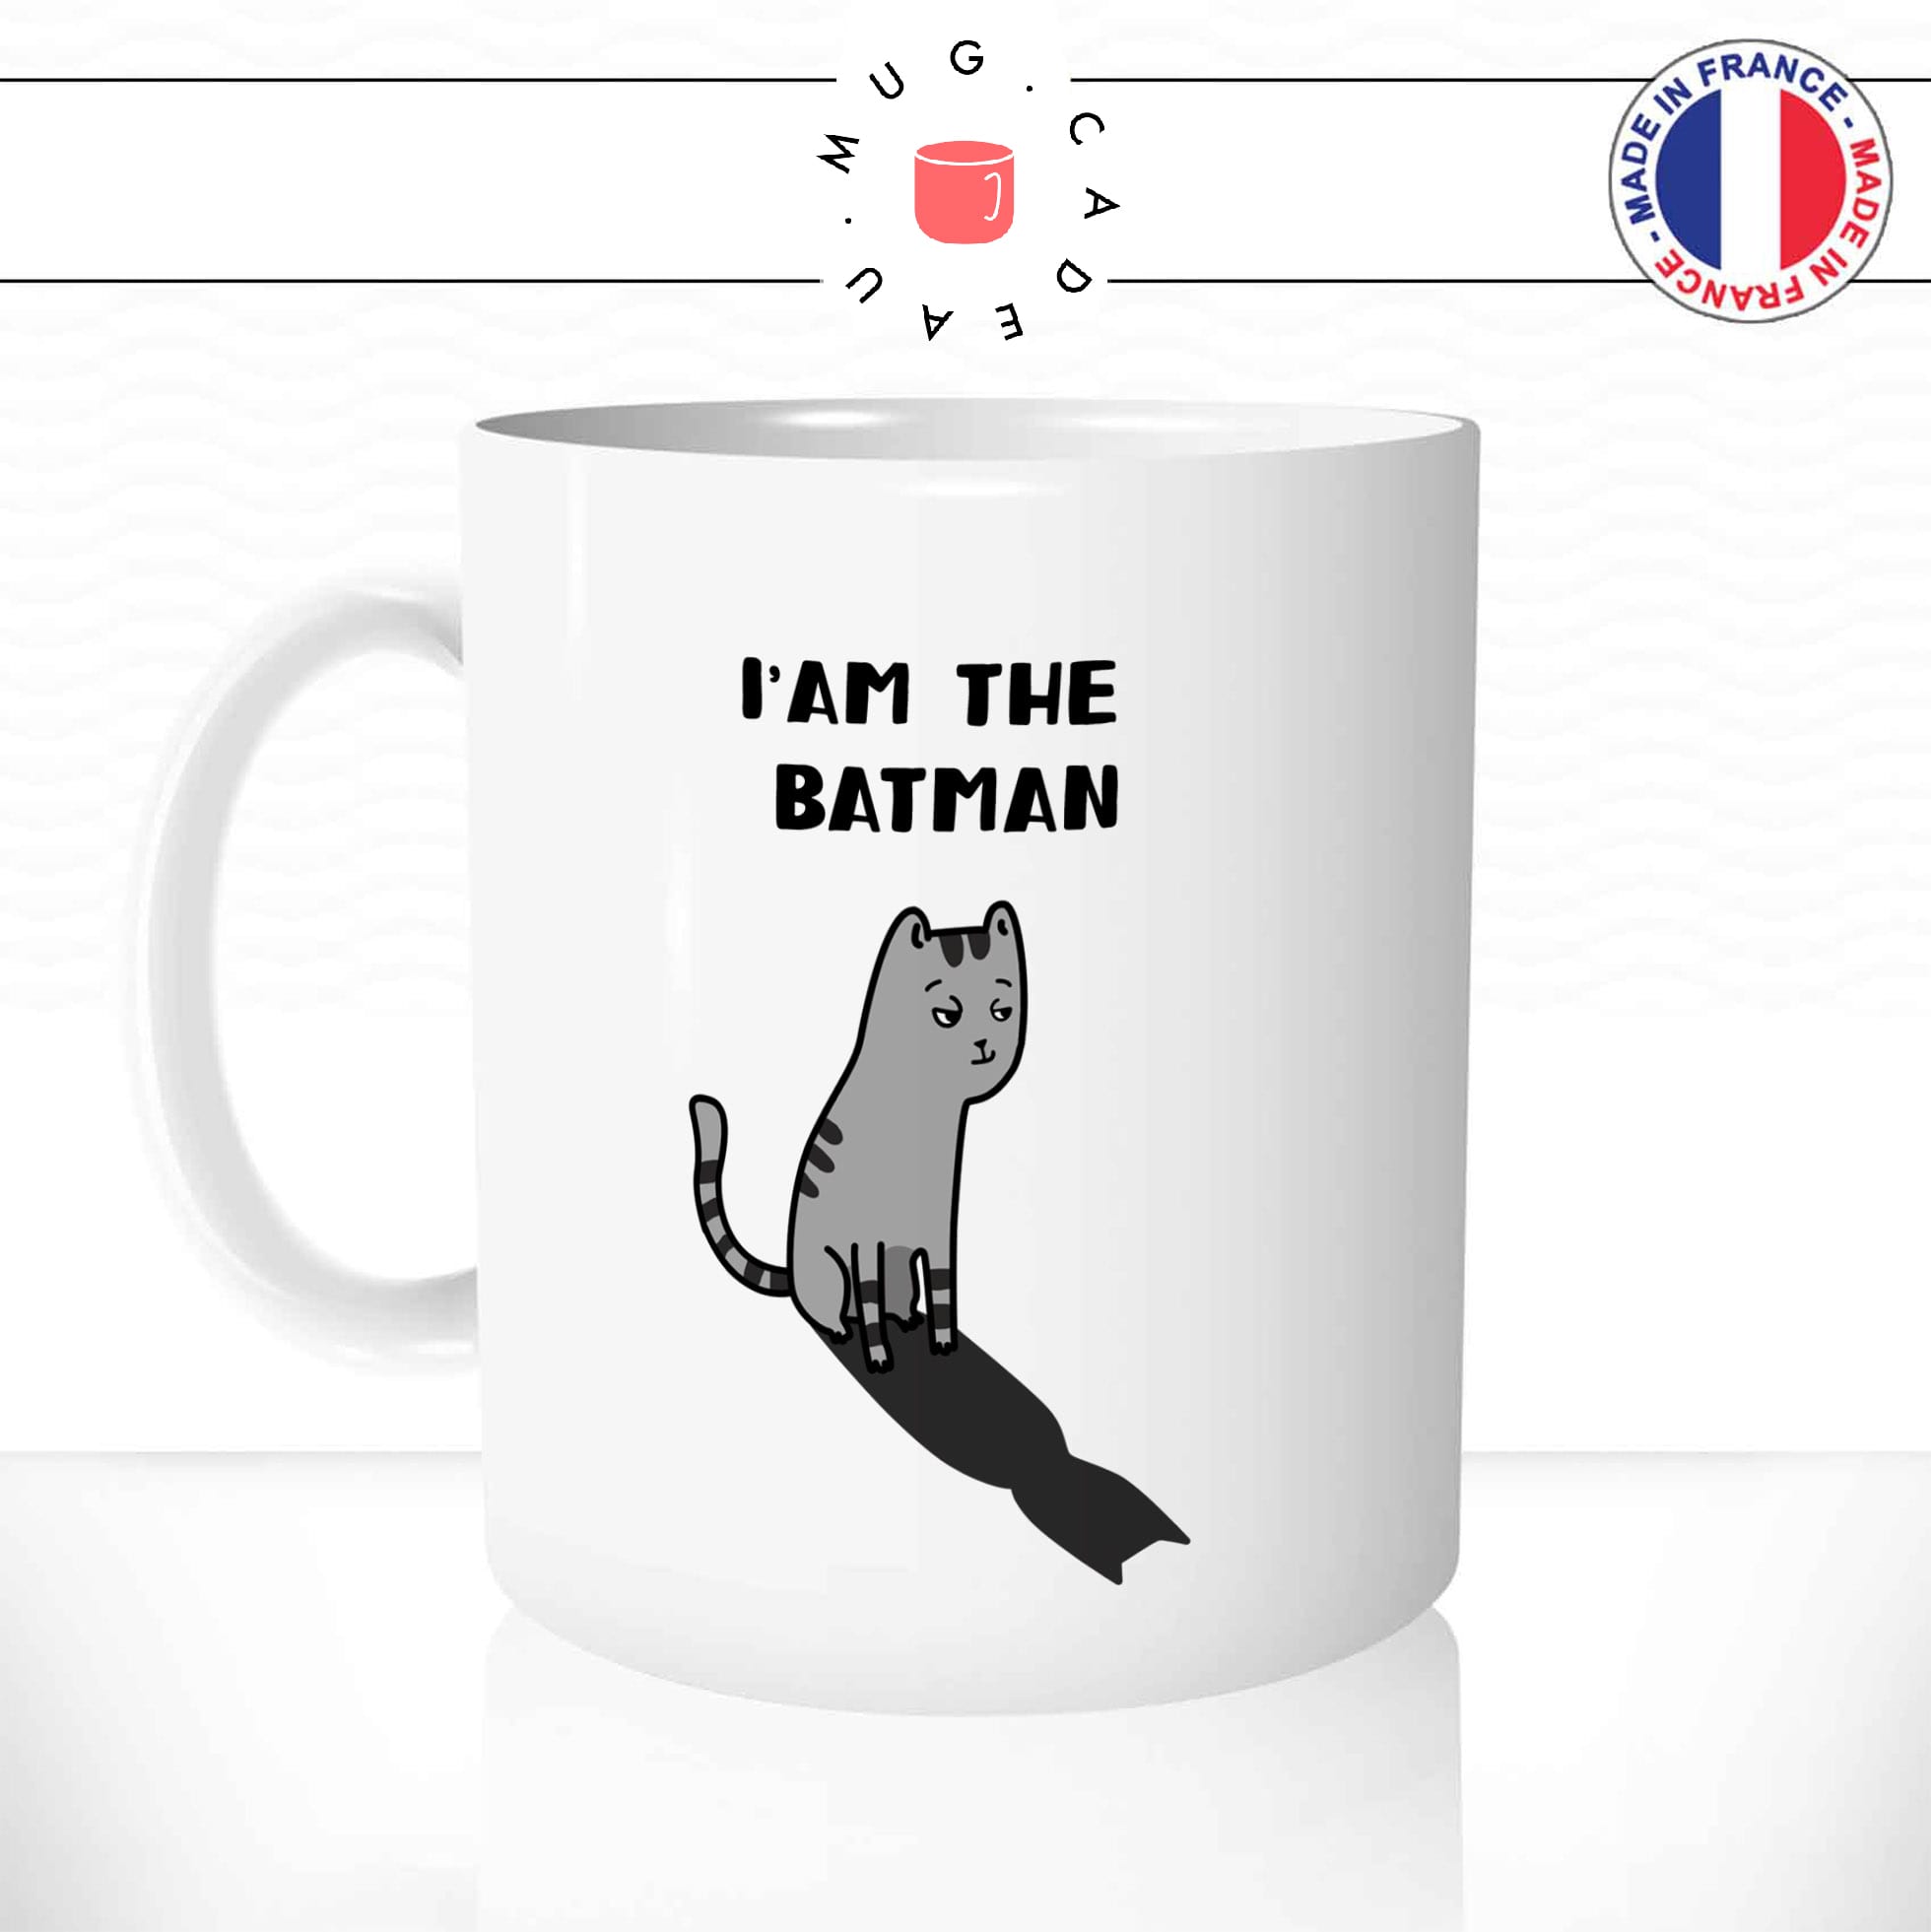 mug-tasse-chat-chaton-noir-batman-humour-ombre-miaou-mignon-dessin-animal-cafe-thé-idée-cadeau-original1